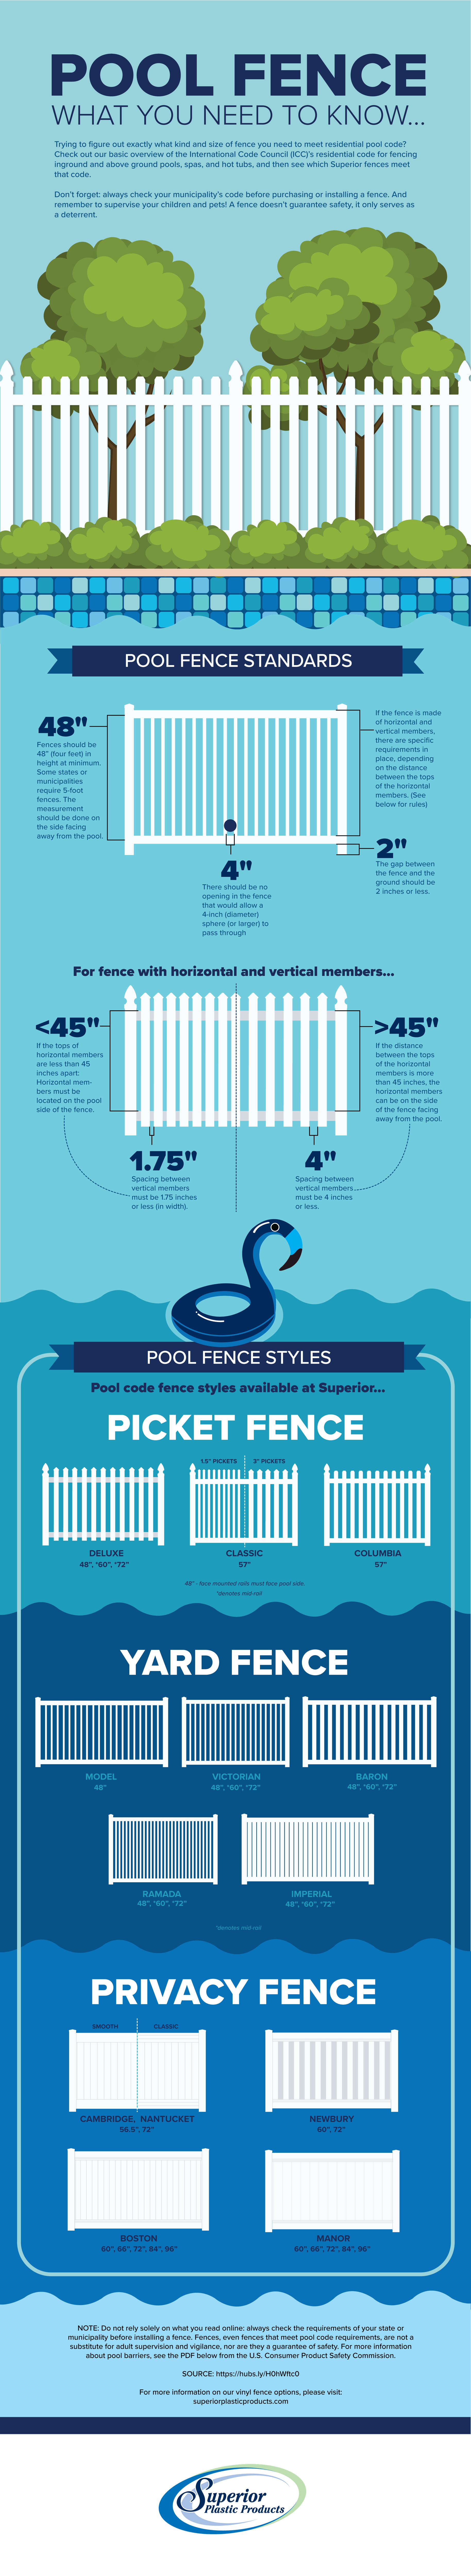 mesa pool fence law